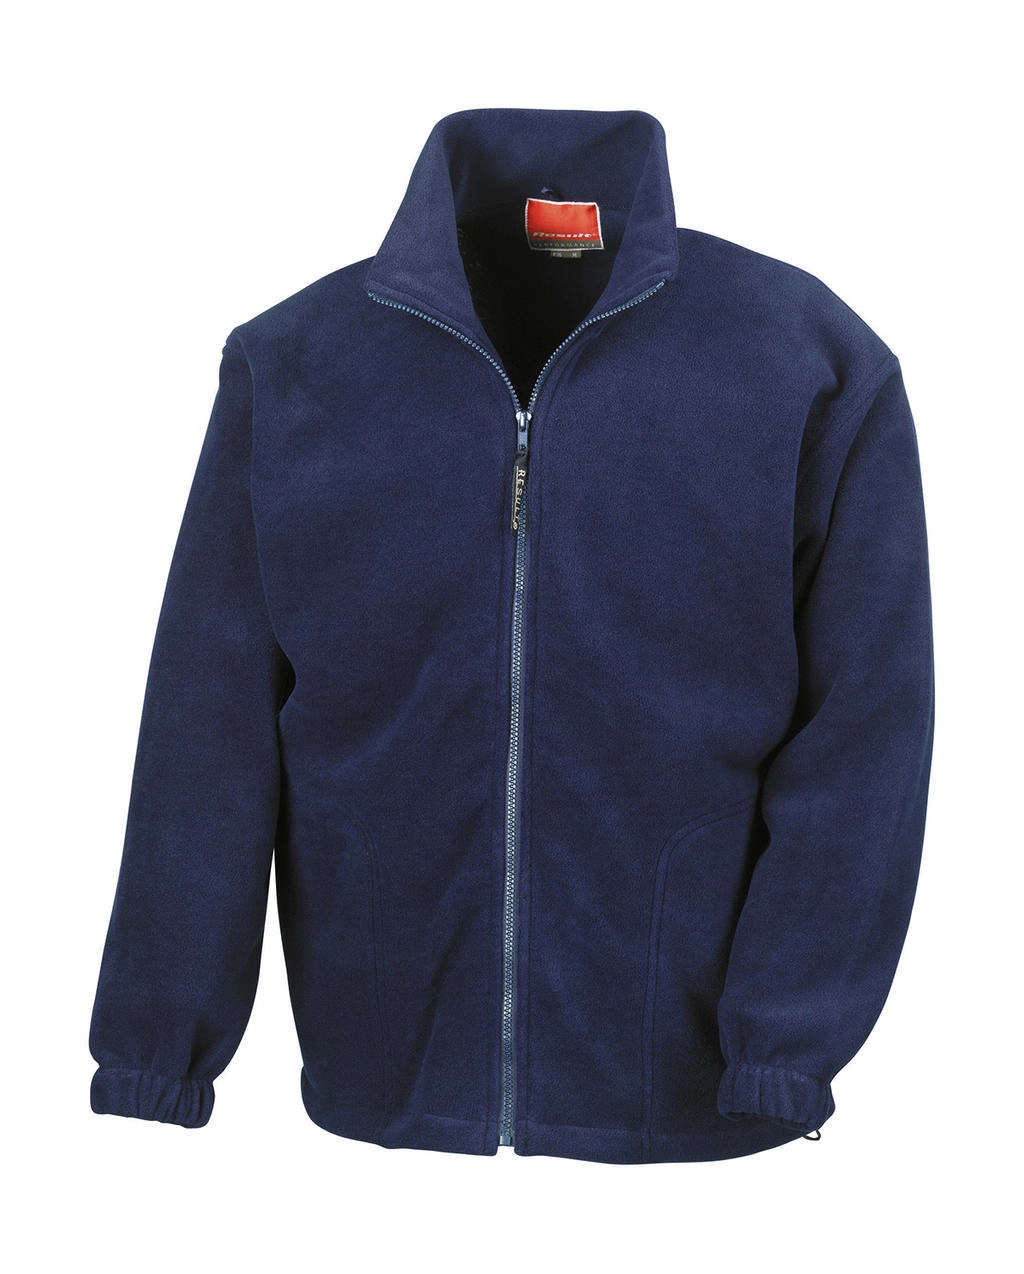 Polartherm™ Jacket zum Besticken und Bedrucken in der Farbe Navy mit Ihren Logo, Schriftzug oder Motiv.